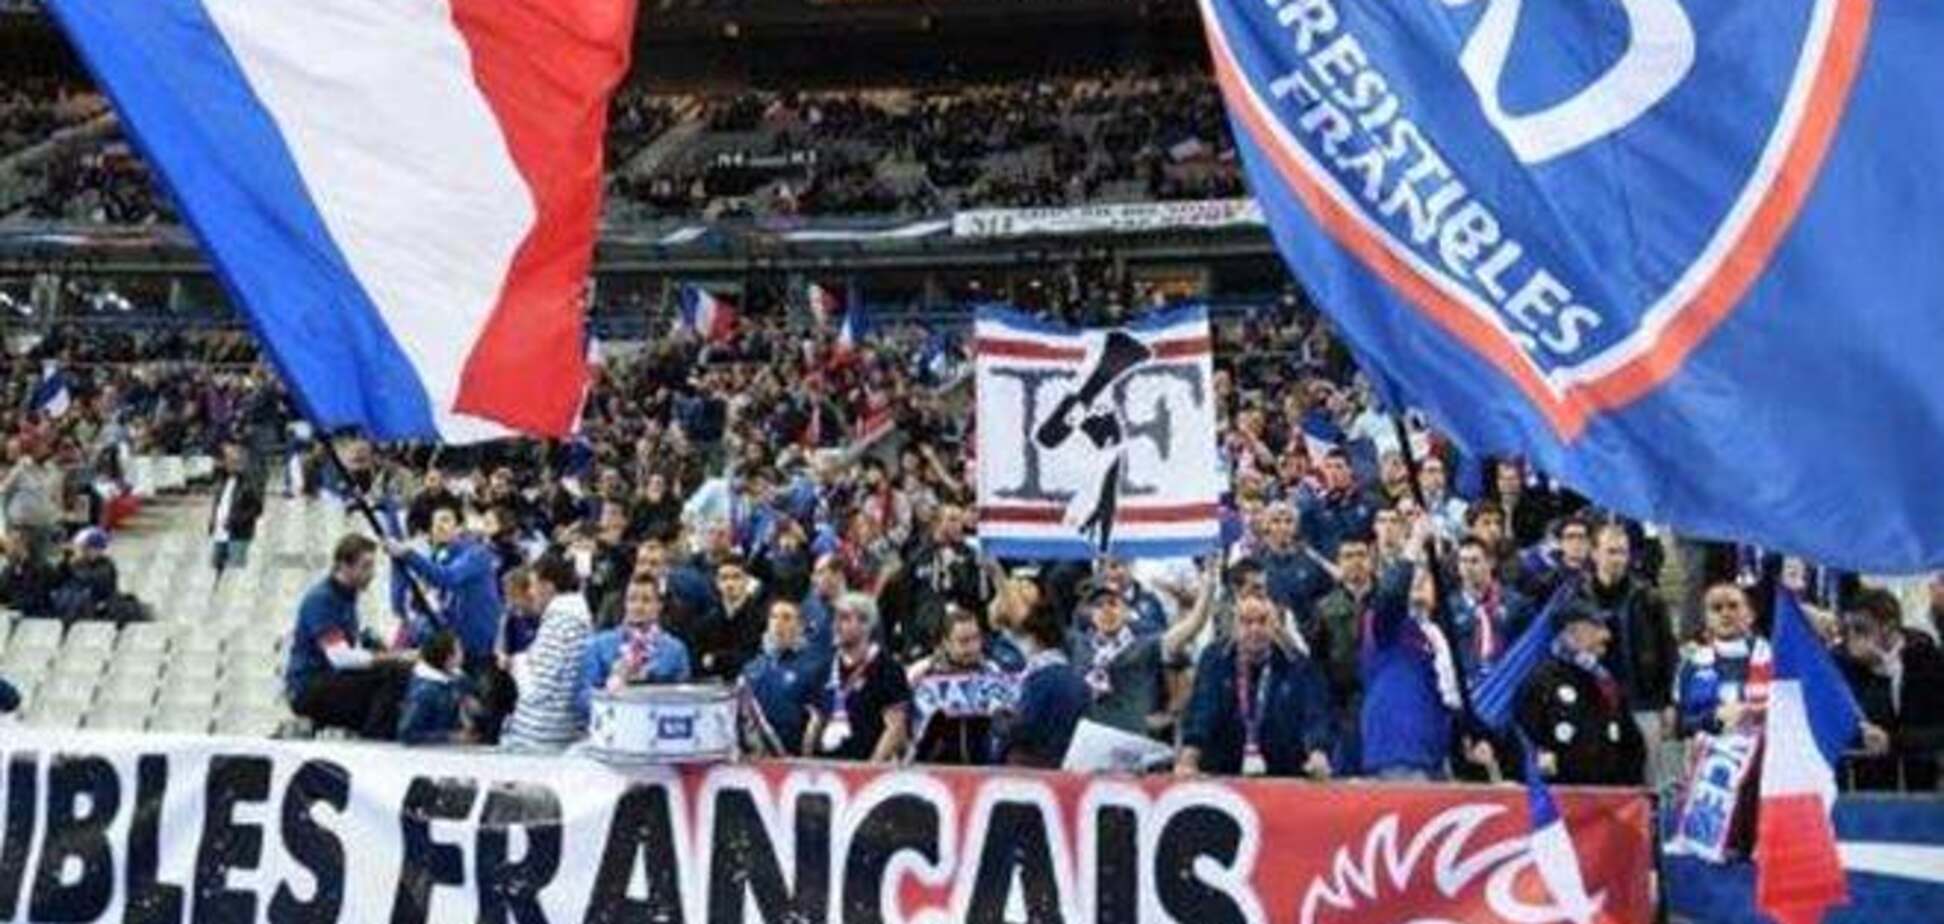 Французская пресса назвала слабые звенья своей сборной